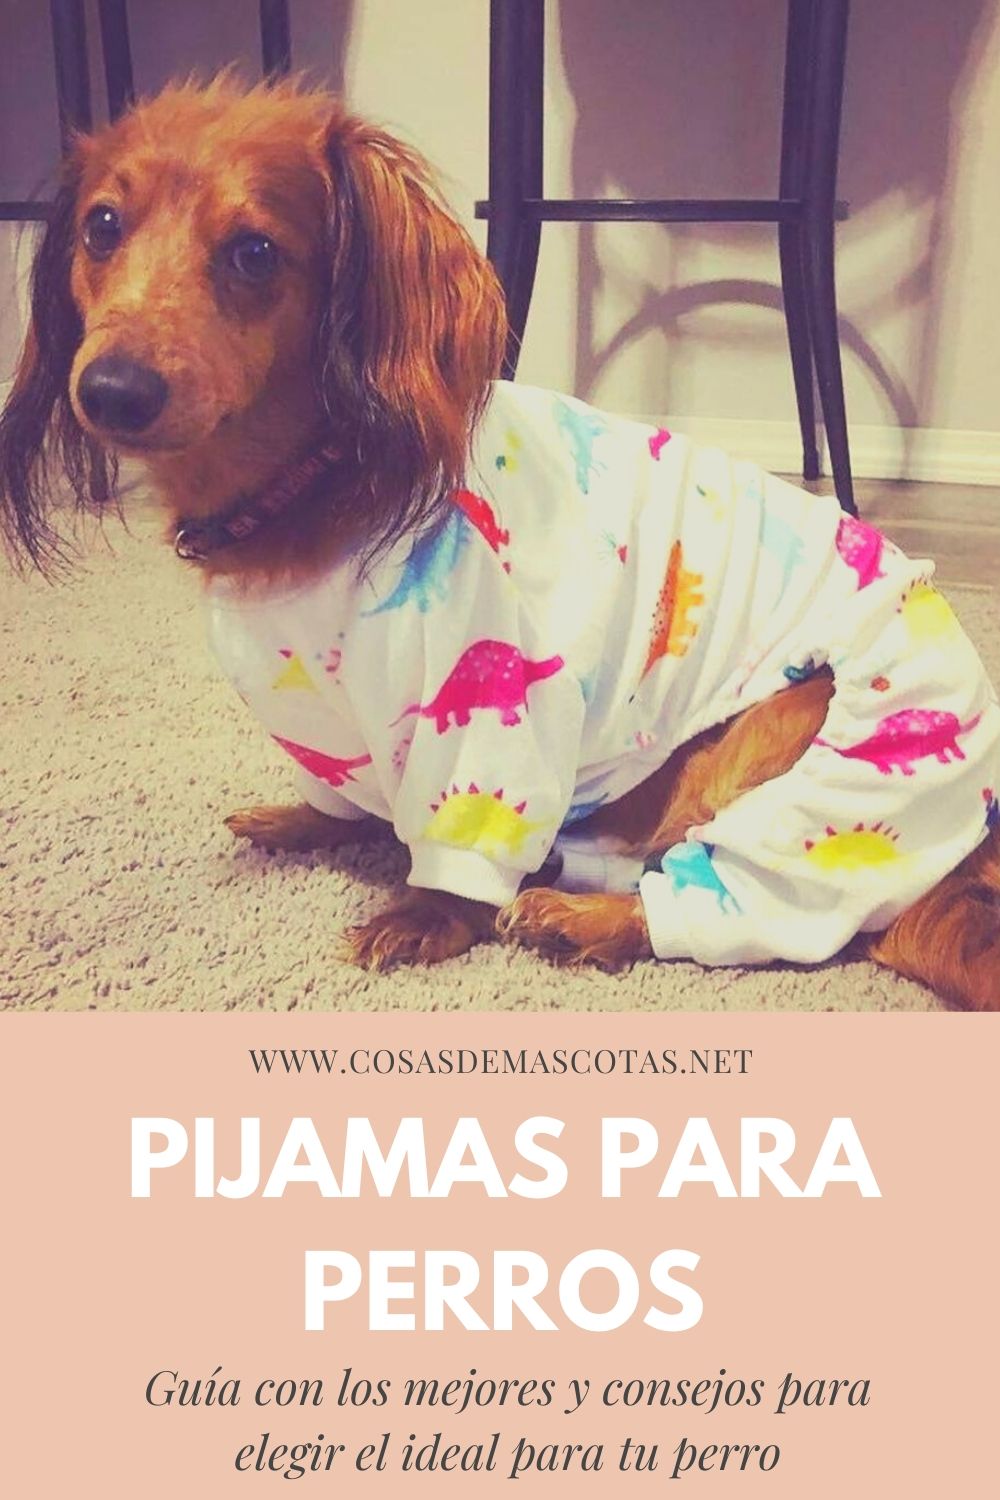  Dog Pajamas